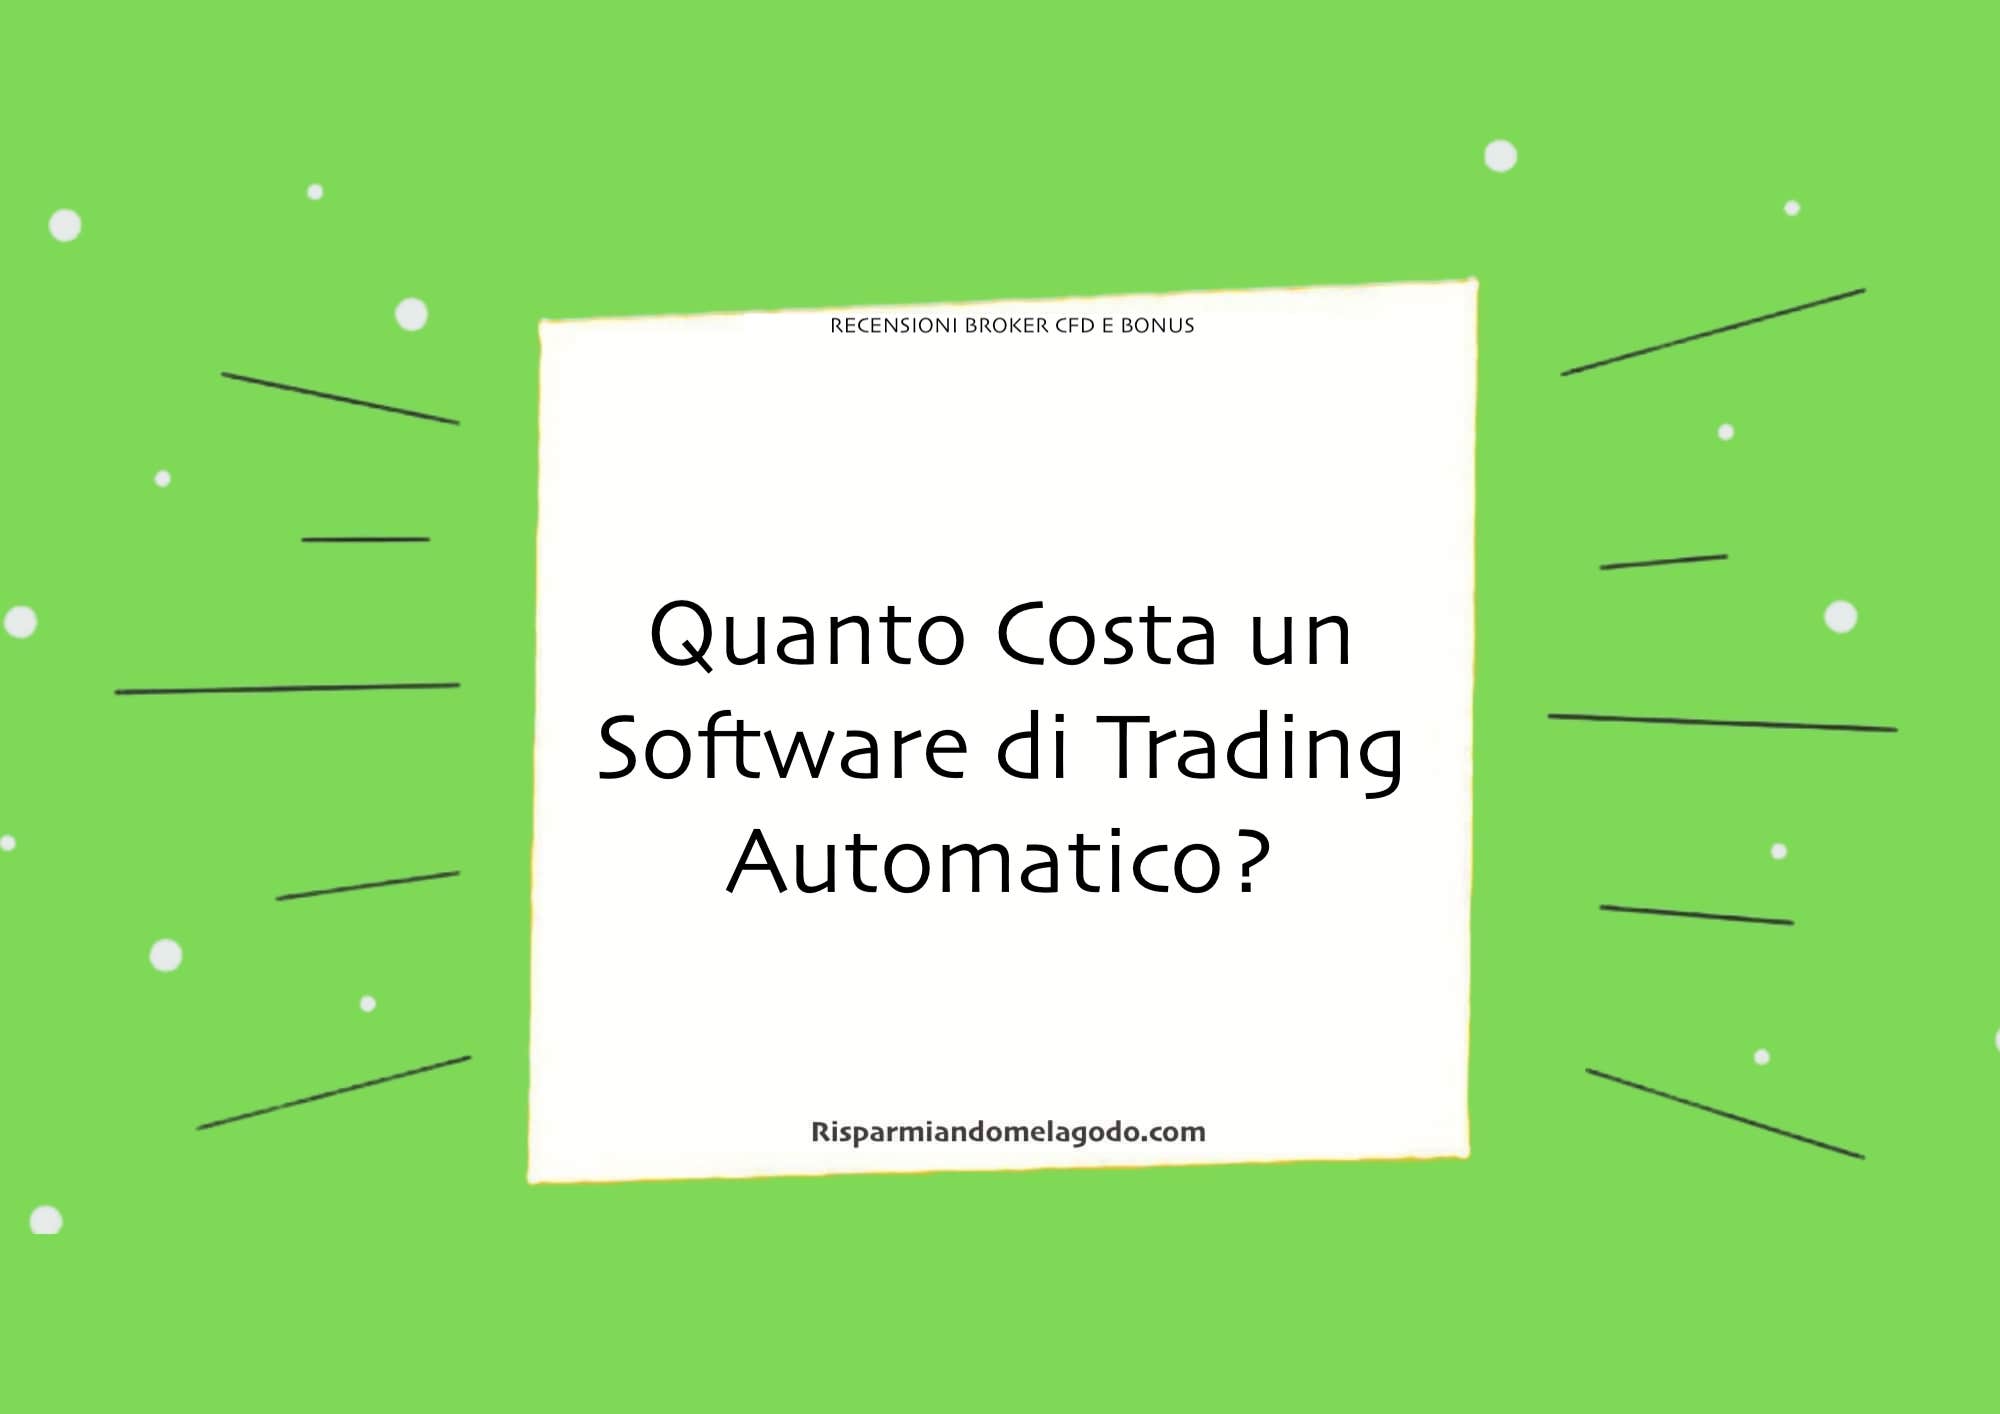 Quanto Costa un Software di Trading Automatico?